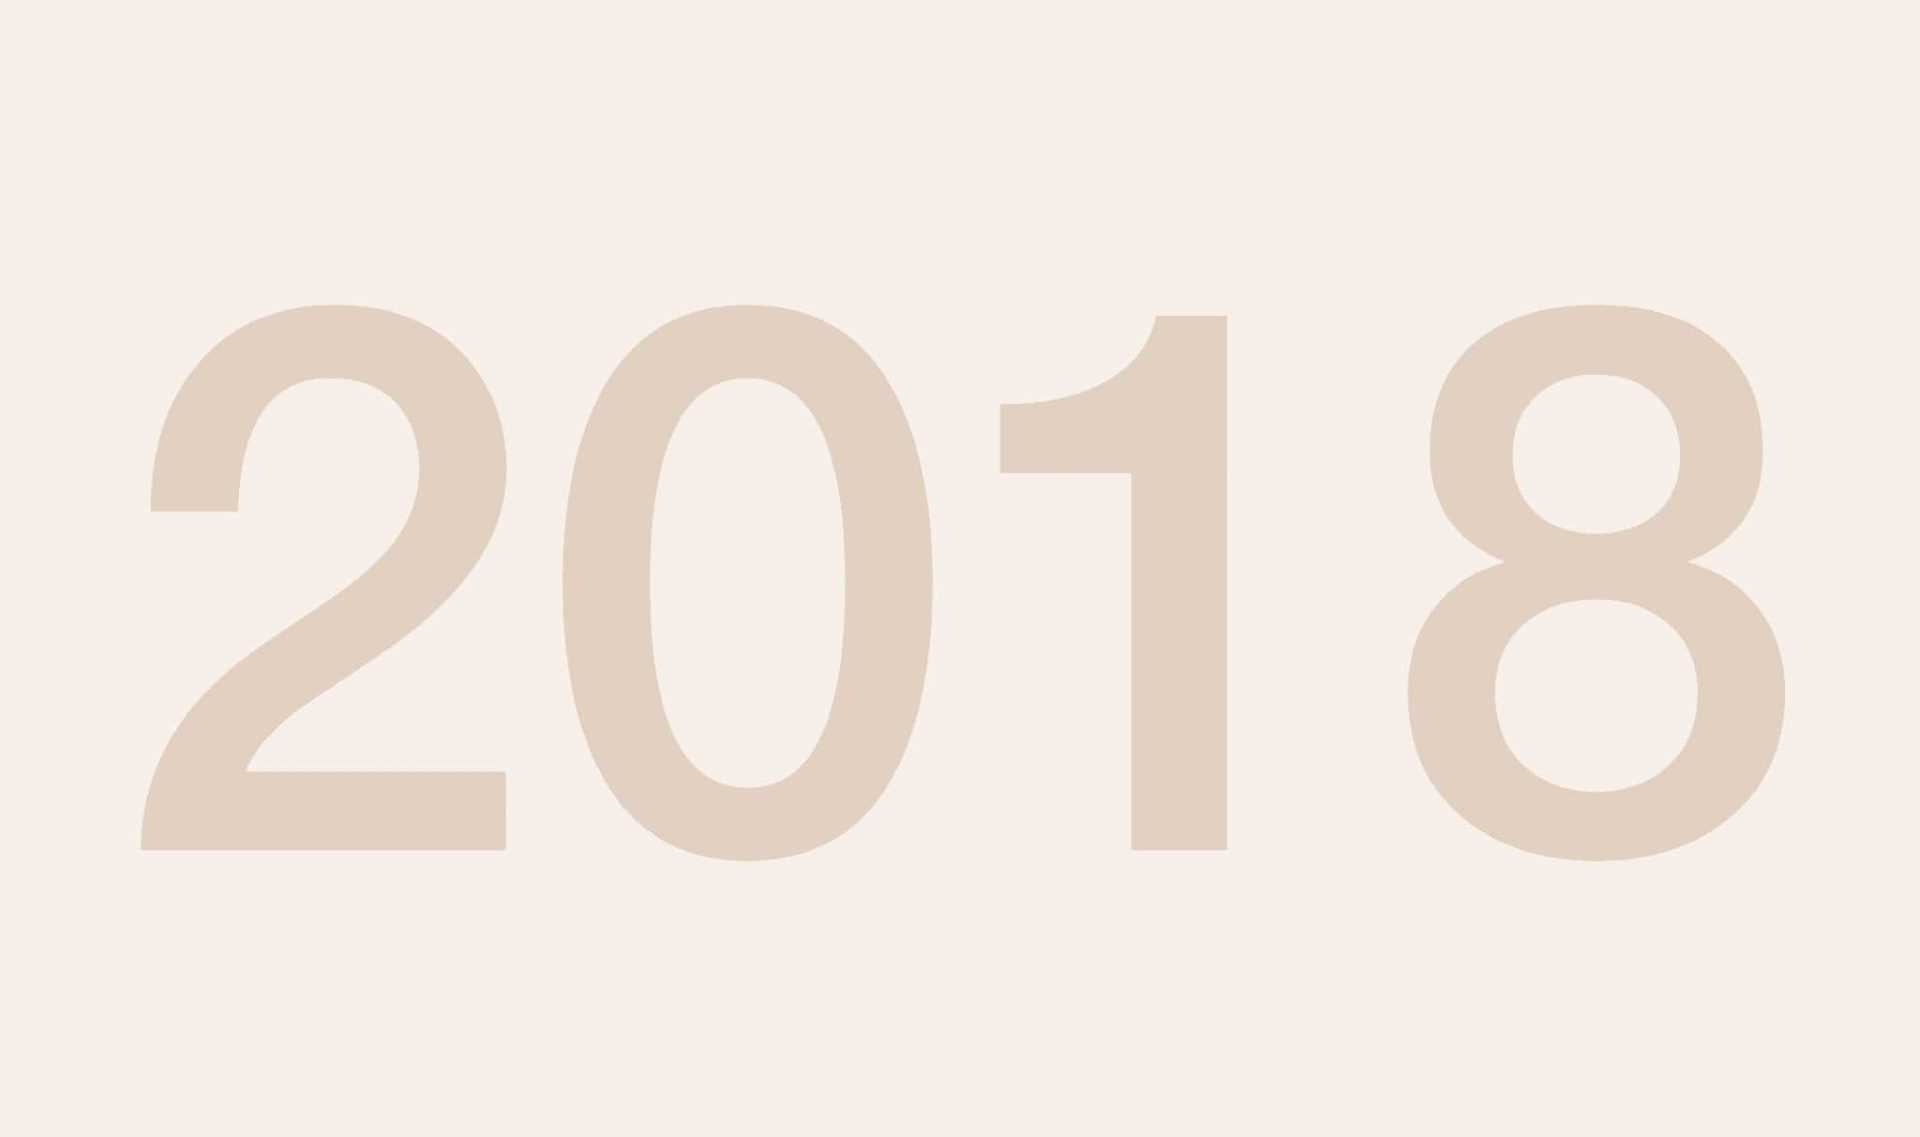 Grafik Jahreszahl 2018